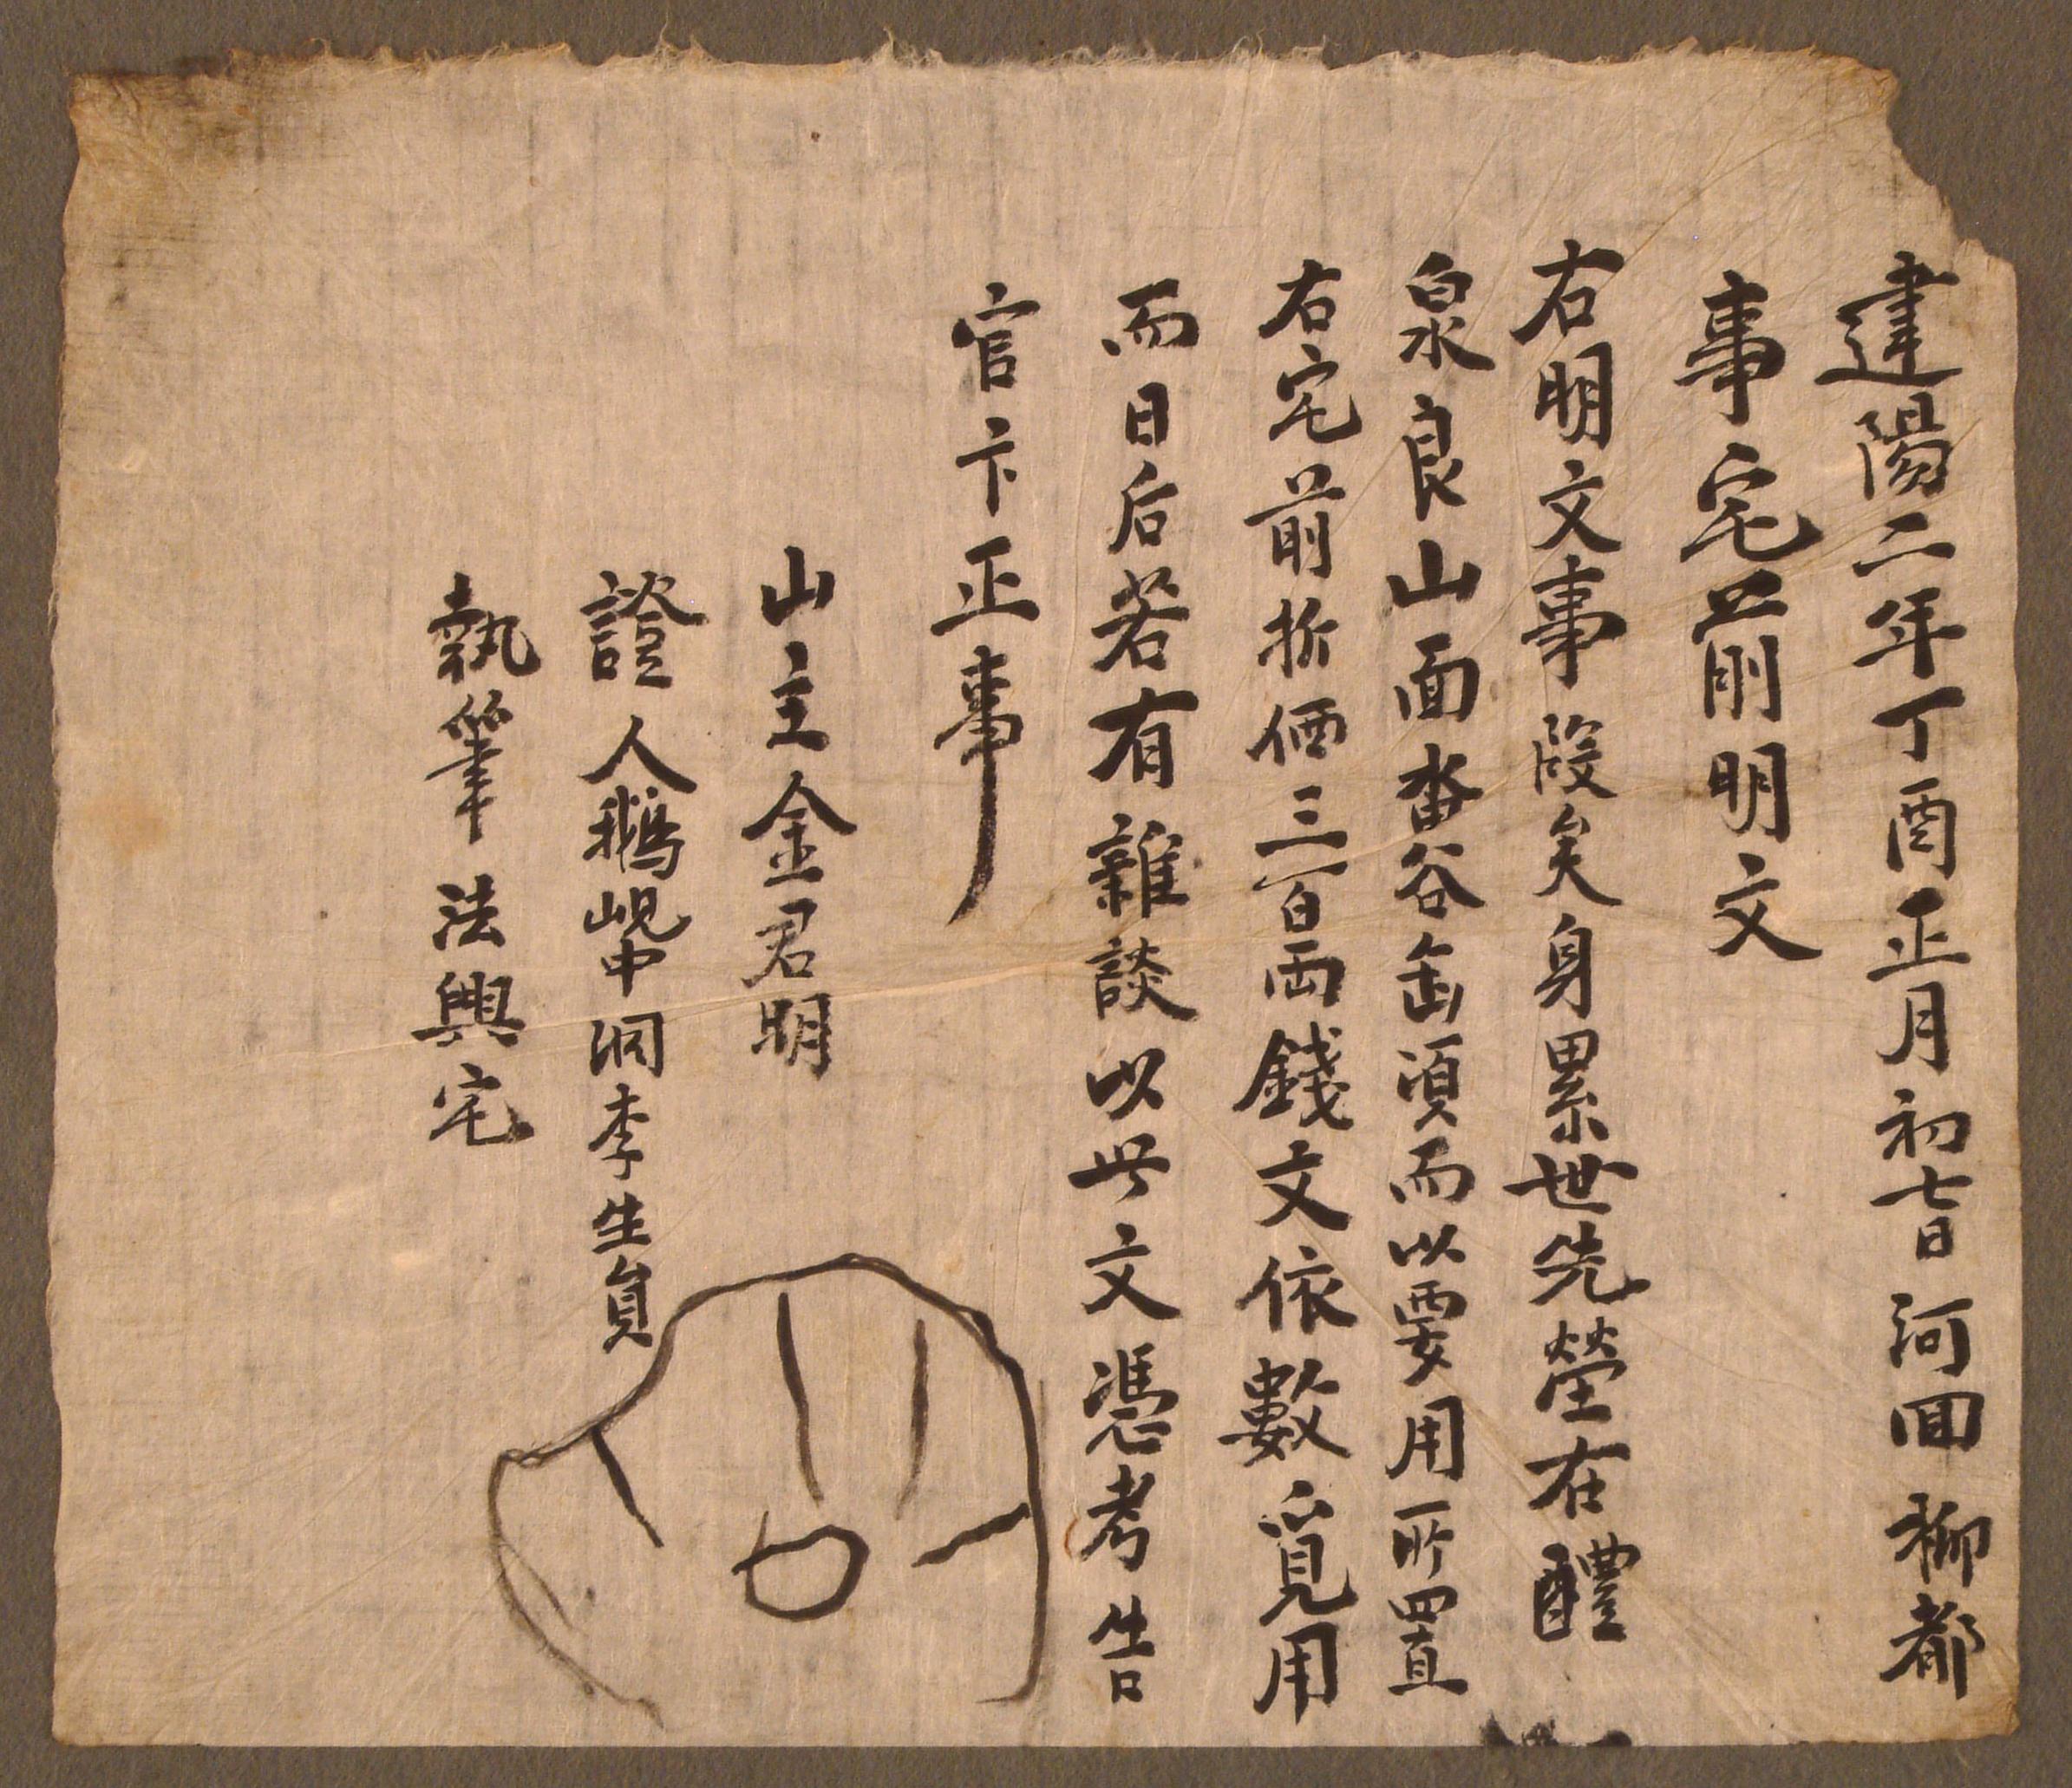 김군명(金君明)이 1897년에 작성한 산지(山地) 방매문기